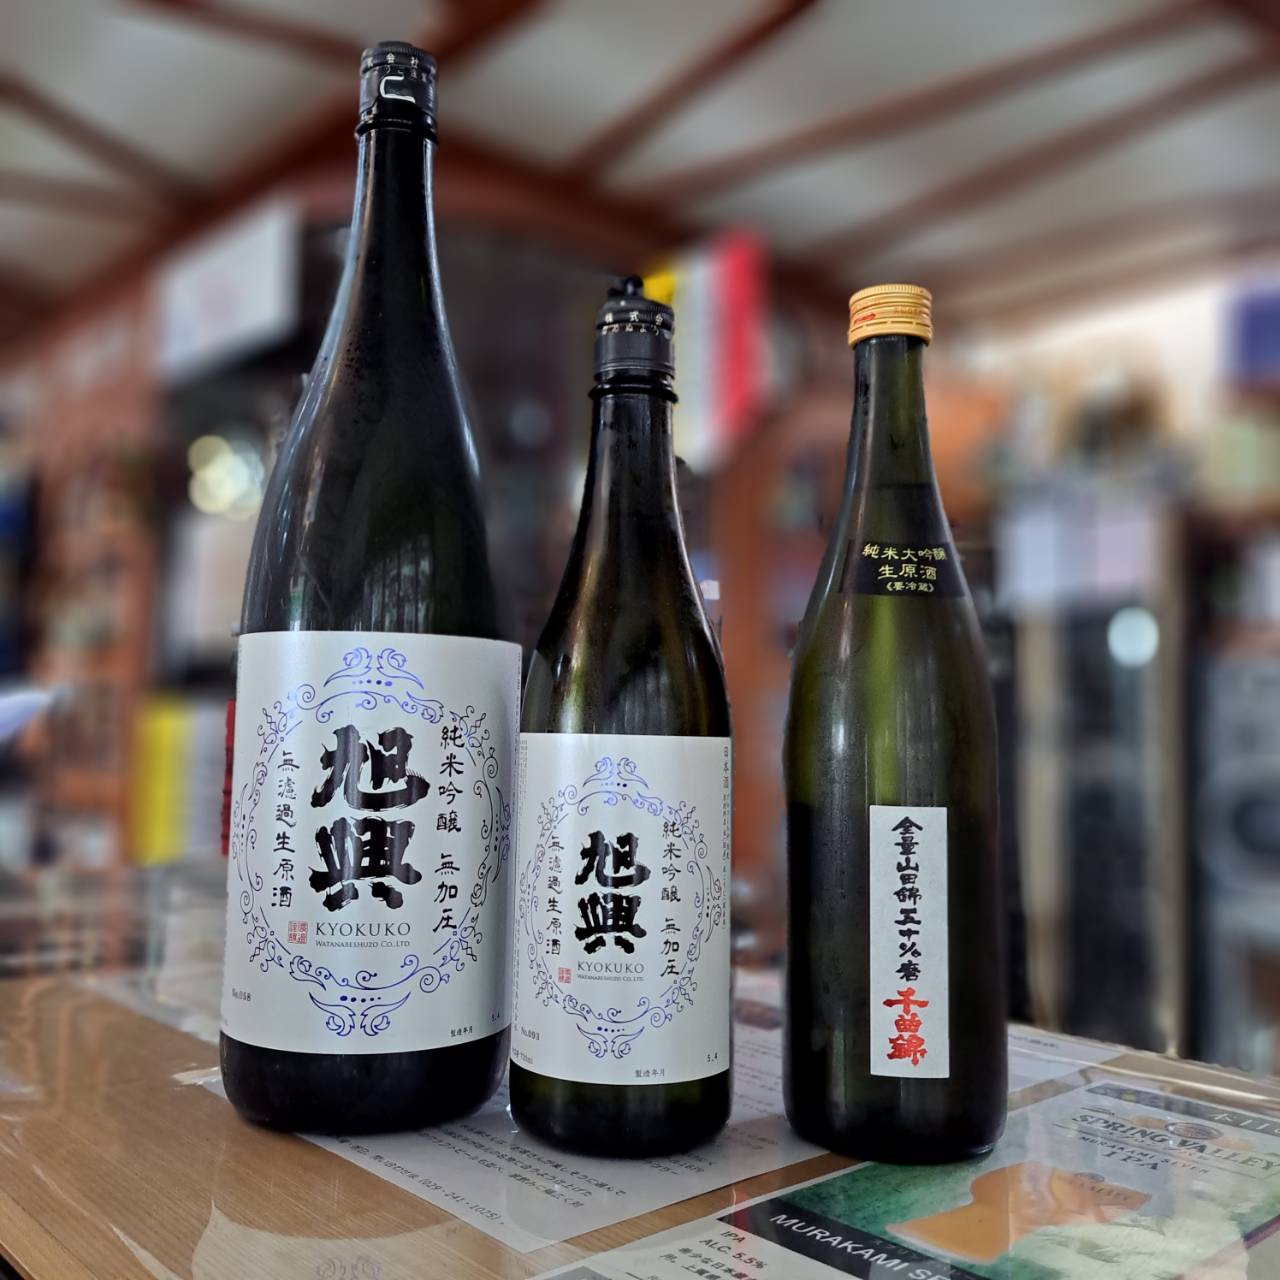 『栃木県の渡邊酒造さんと長野県の千曲錦酒造さんからコスパ抜群の春季限定酒が入荷しました』